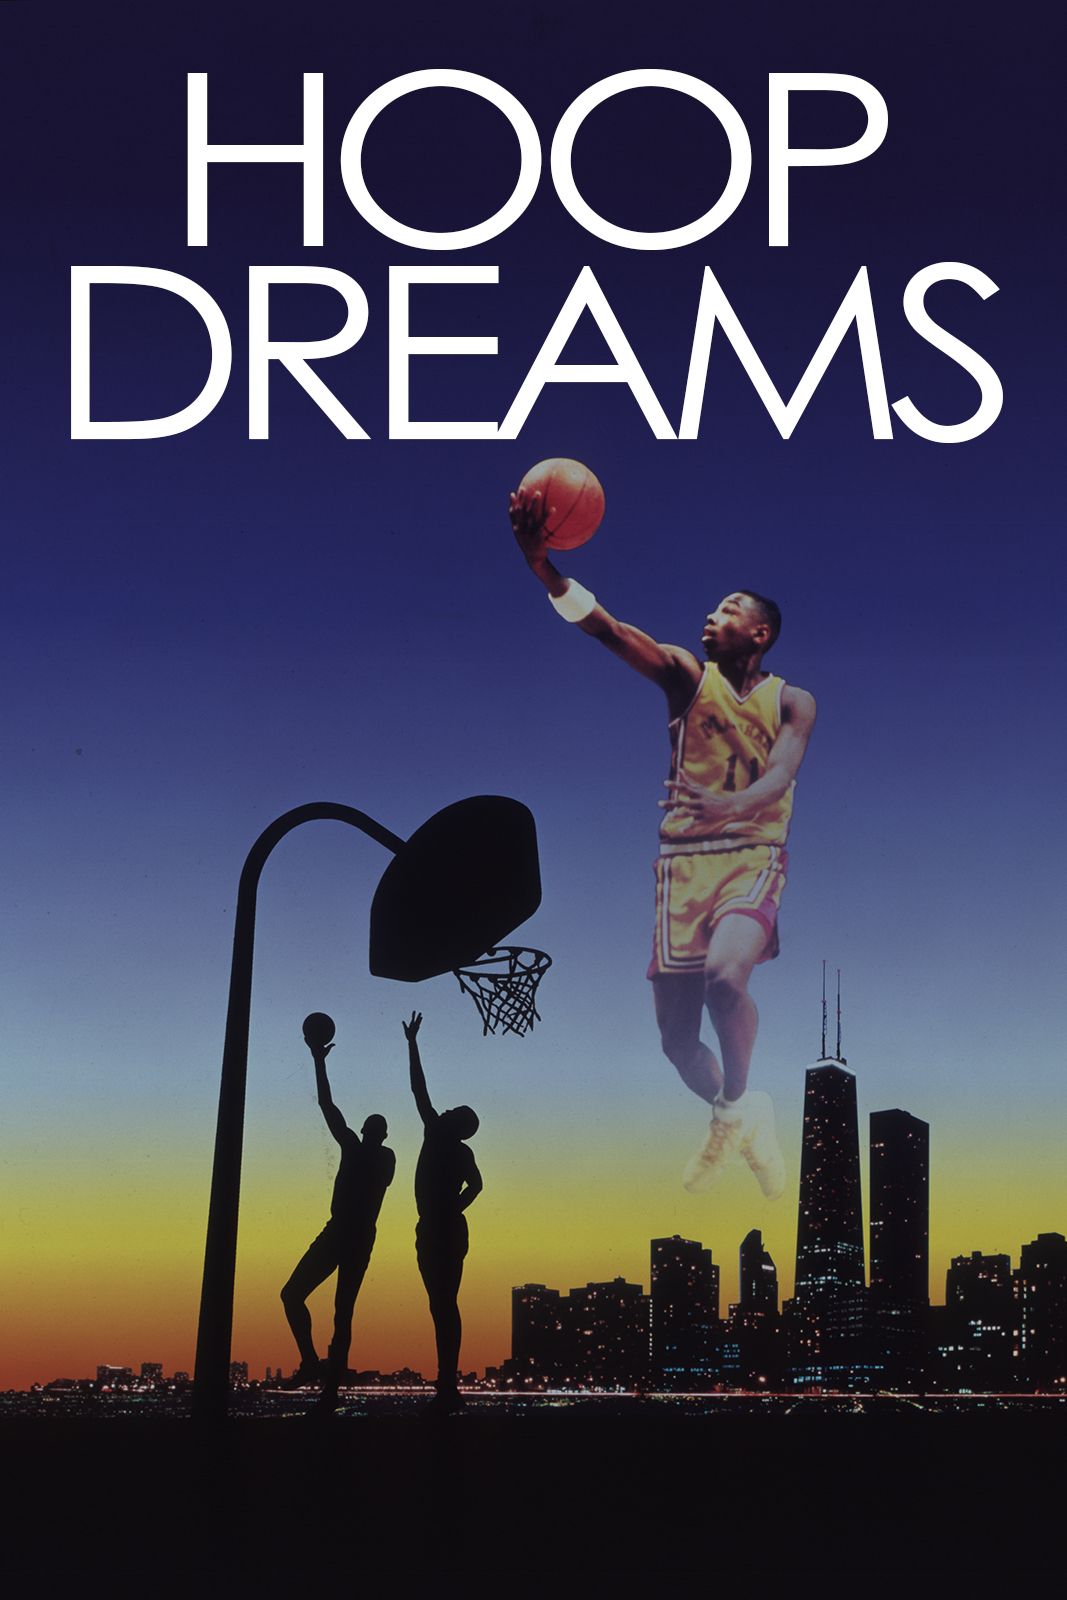 Hoop Dreams 1994 Movie Poster 